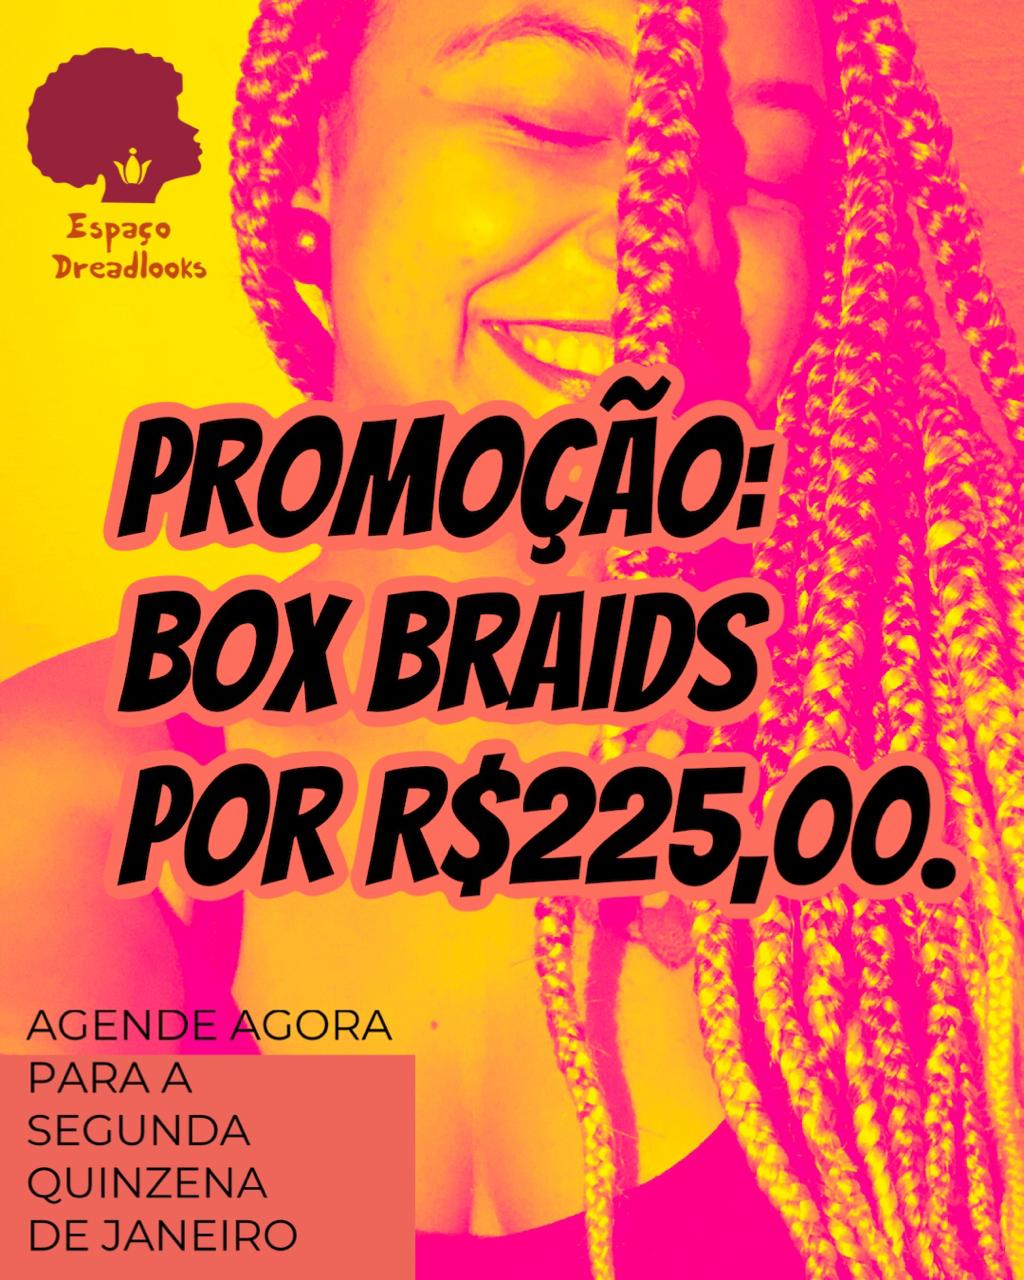 Promoção: Promoção Box Braids